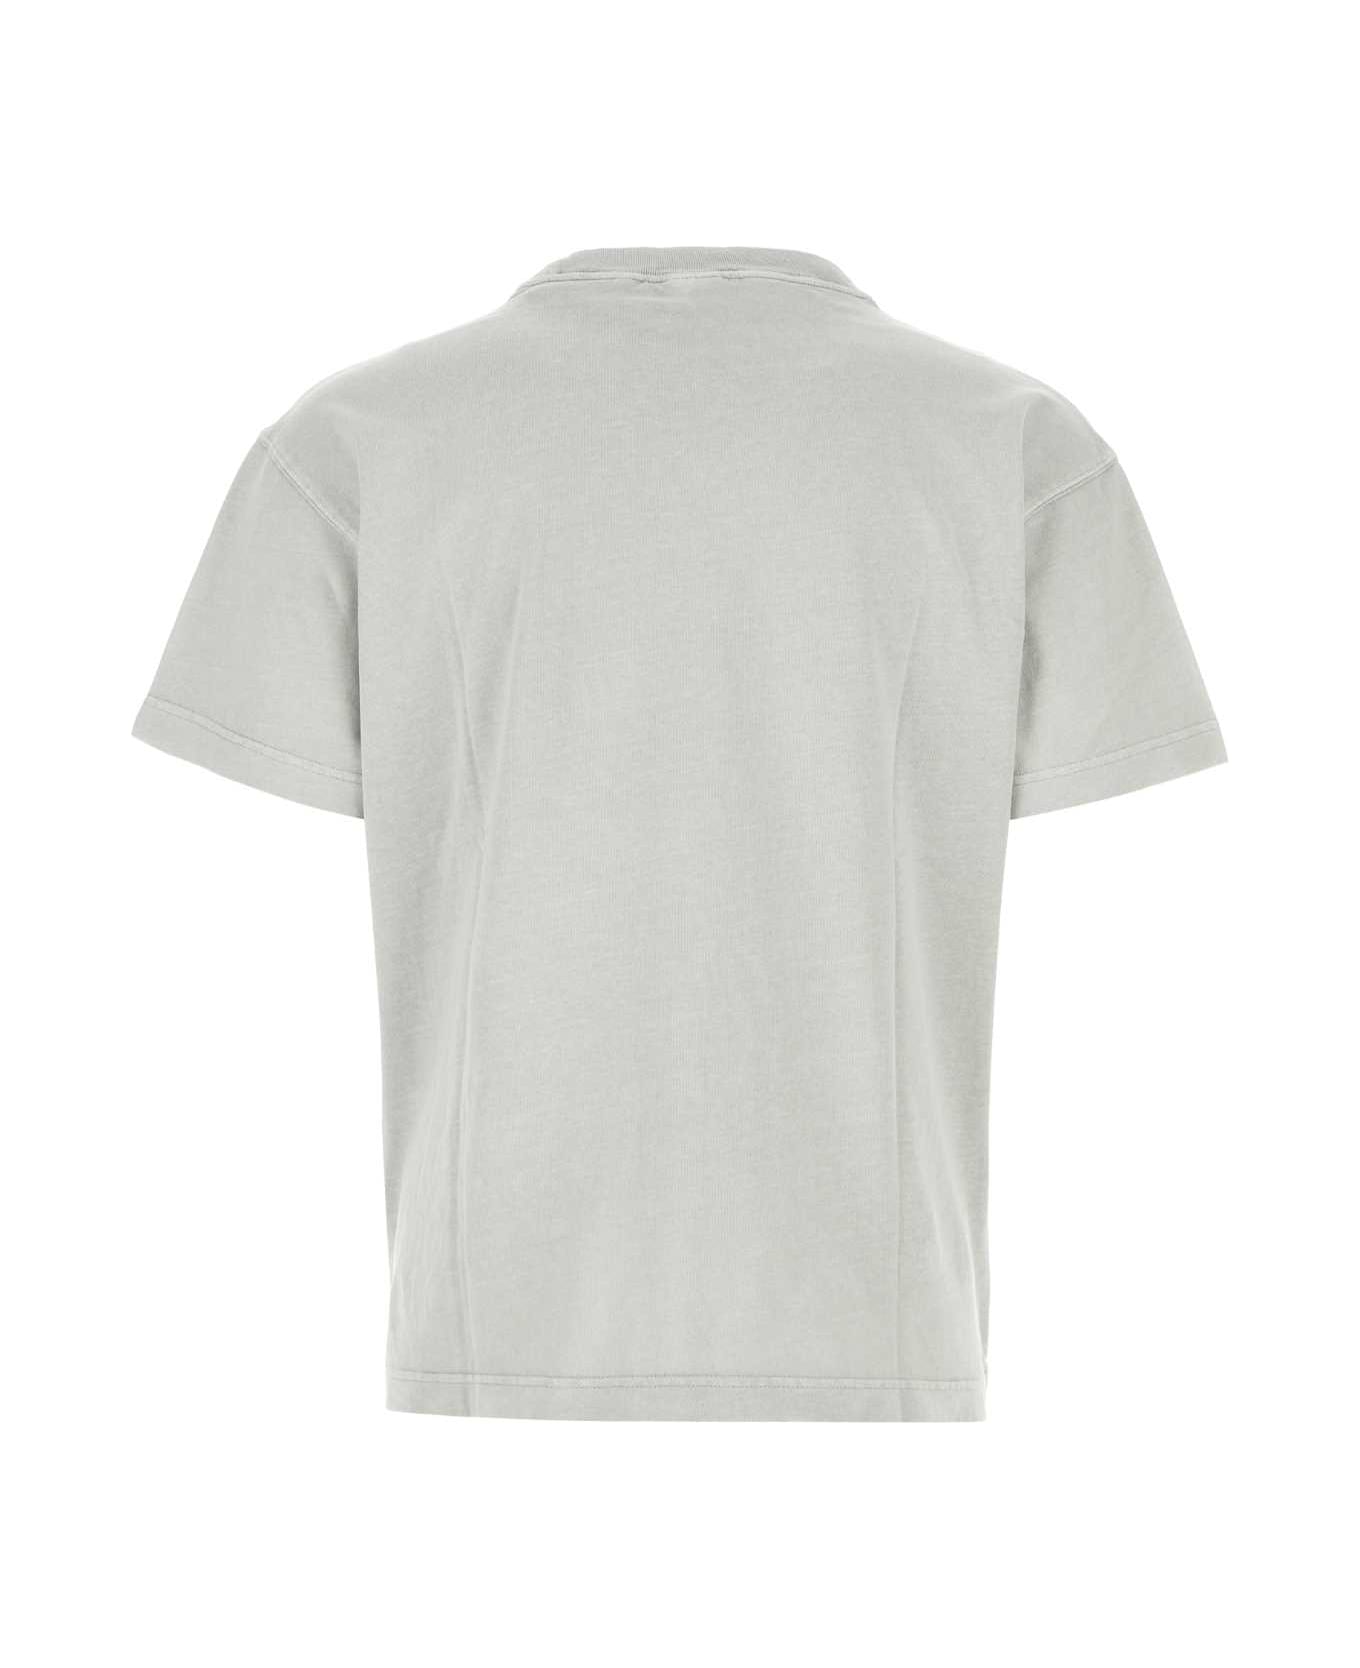 Carhartt Light Grey Cotton Oversize S/s Nelson T-shirt - SONICSILVER